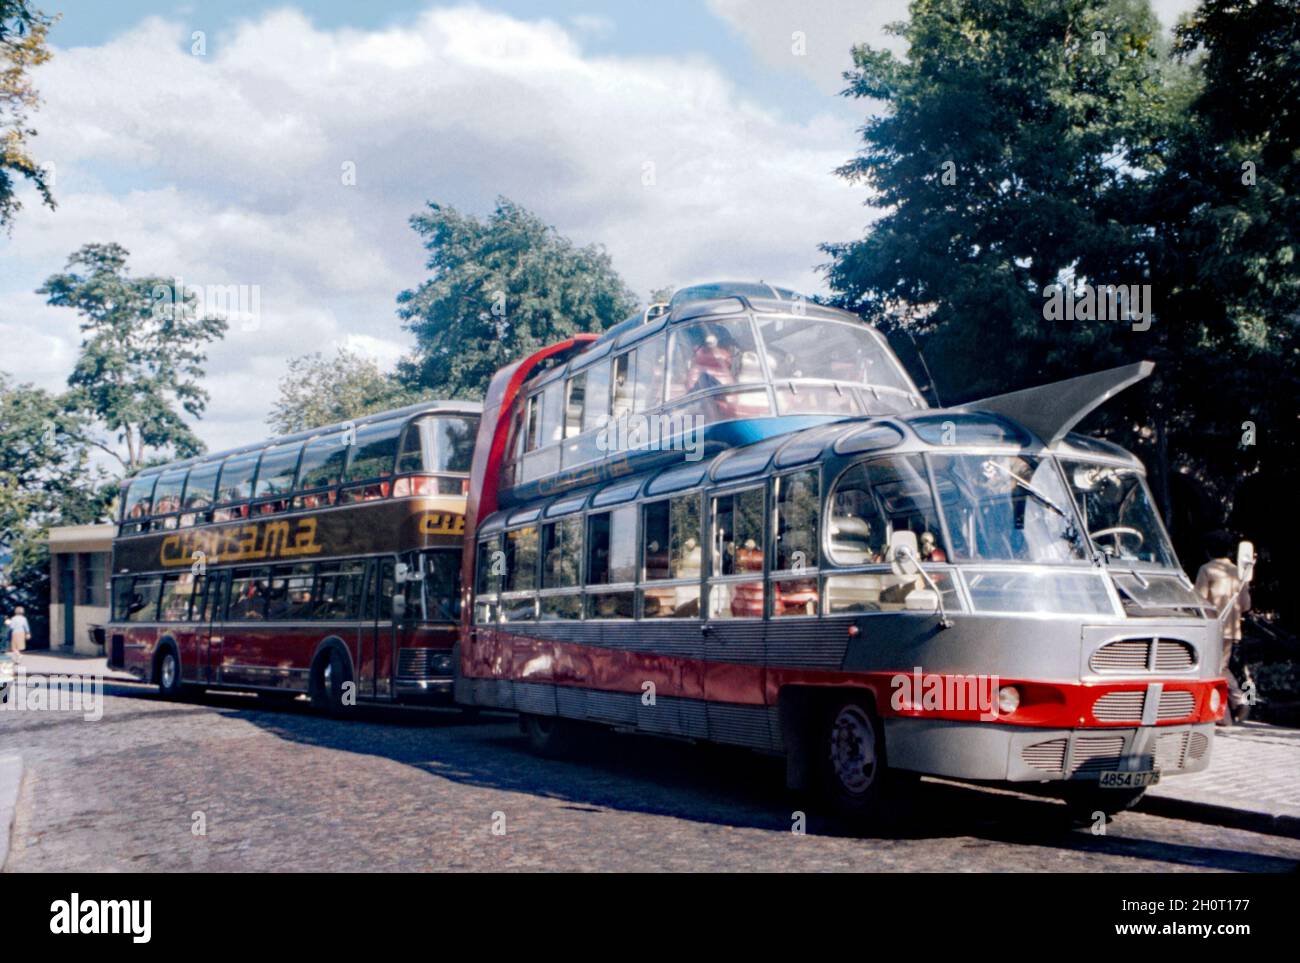 Zwei Cityrama-Reisebusse der Groupe in Paris, Frankreich, 1971. Der Bus davor ist der markante modernistische, raumzeitalterige Citroën U55 Cityrama currus. 1956 beauftragte die französische Reisefirma Groupe Cityrama den Karosseriebauer Currus mit dem Bau neuer Busse. Basis sollte das 1953 Citroën Typ 55 LKW-Chassis sein. Alle 50 Passagiere (20 auf dem Oberdeck) würden von der riesigen Anzahl an Fenstern profitieren und das Dach war einfahrbar. Currus gebaut zwischen fünf und 10 Bussen – ein altes Foto aus den 1970er Jahren. Stockfoto